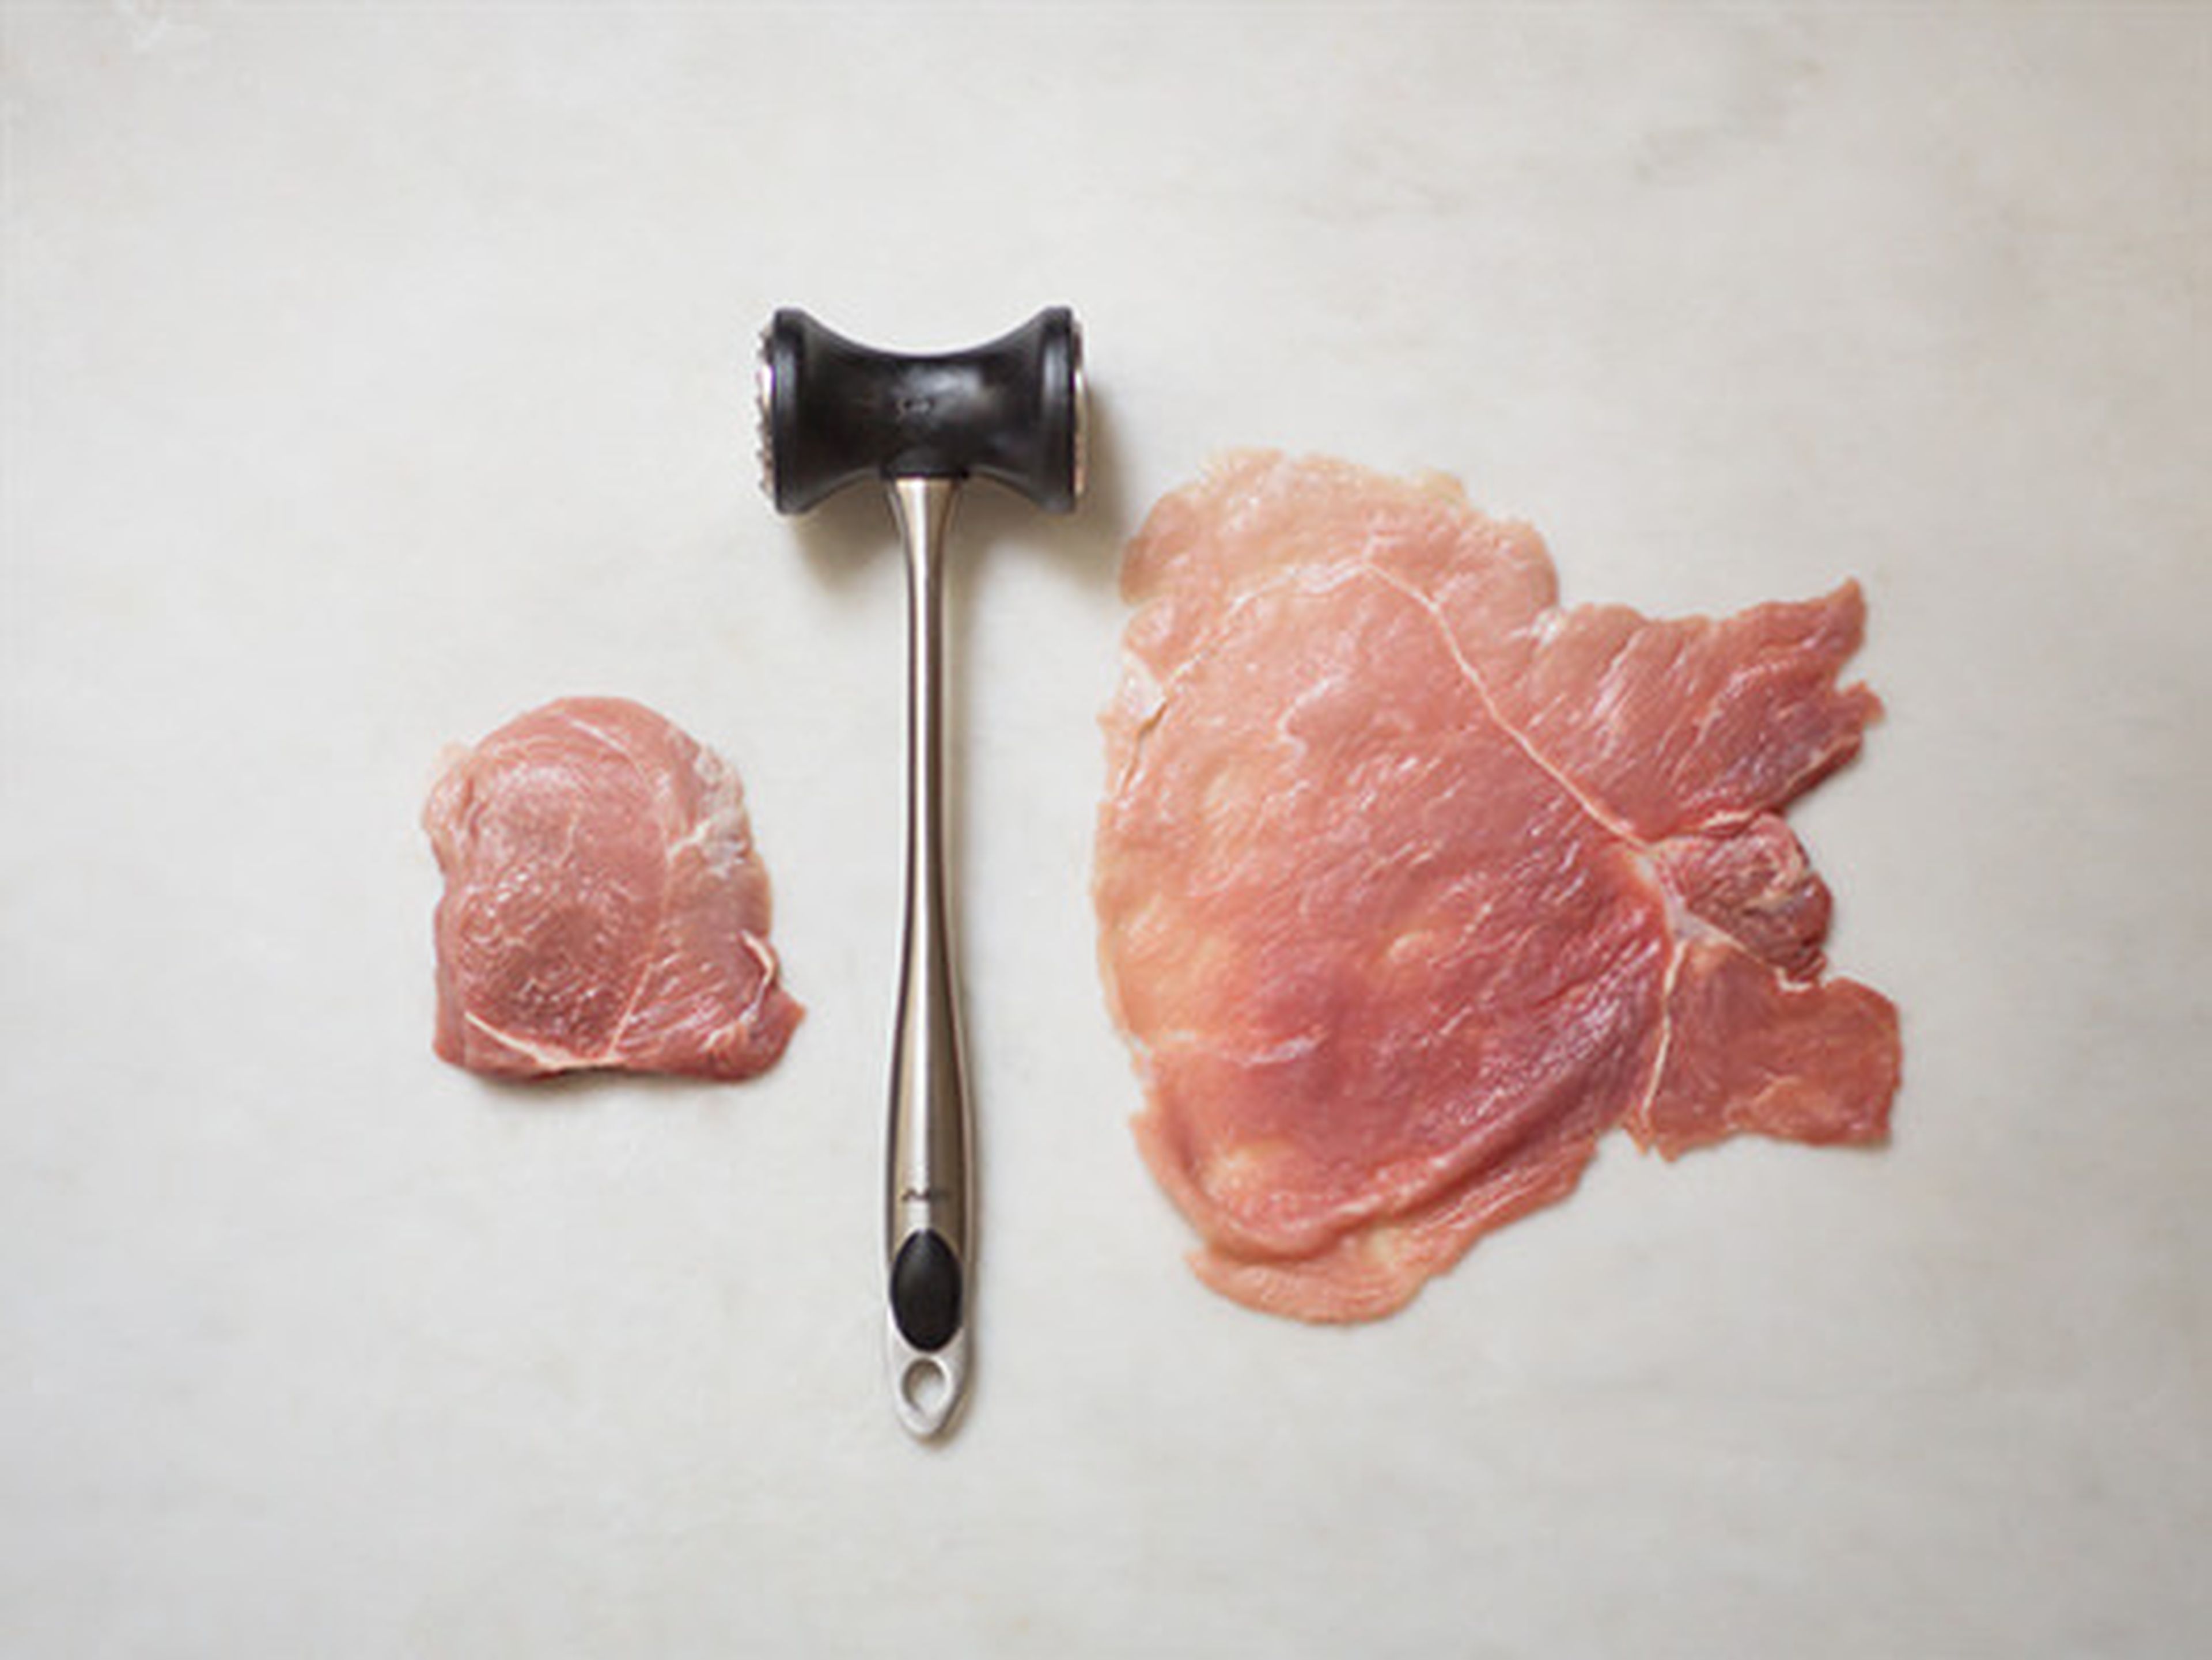 How to flatten meat